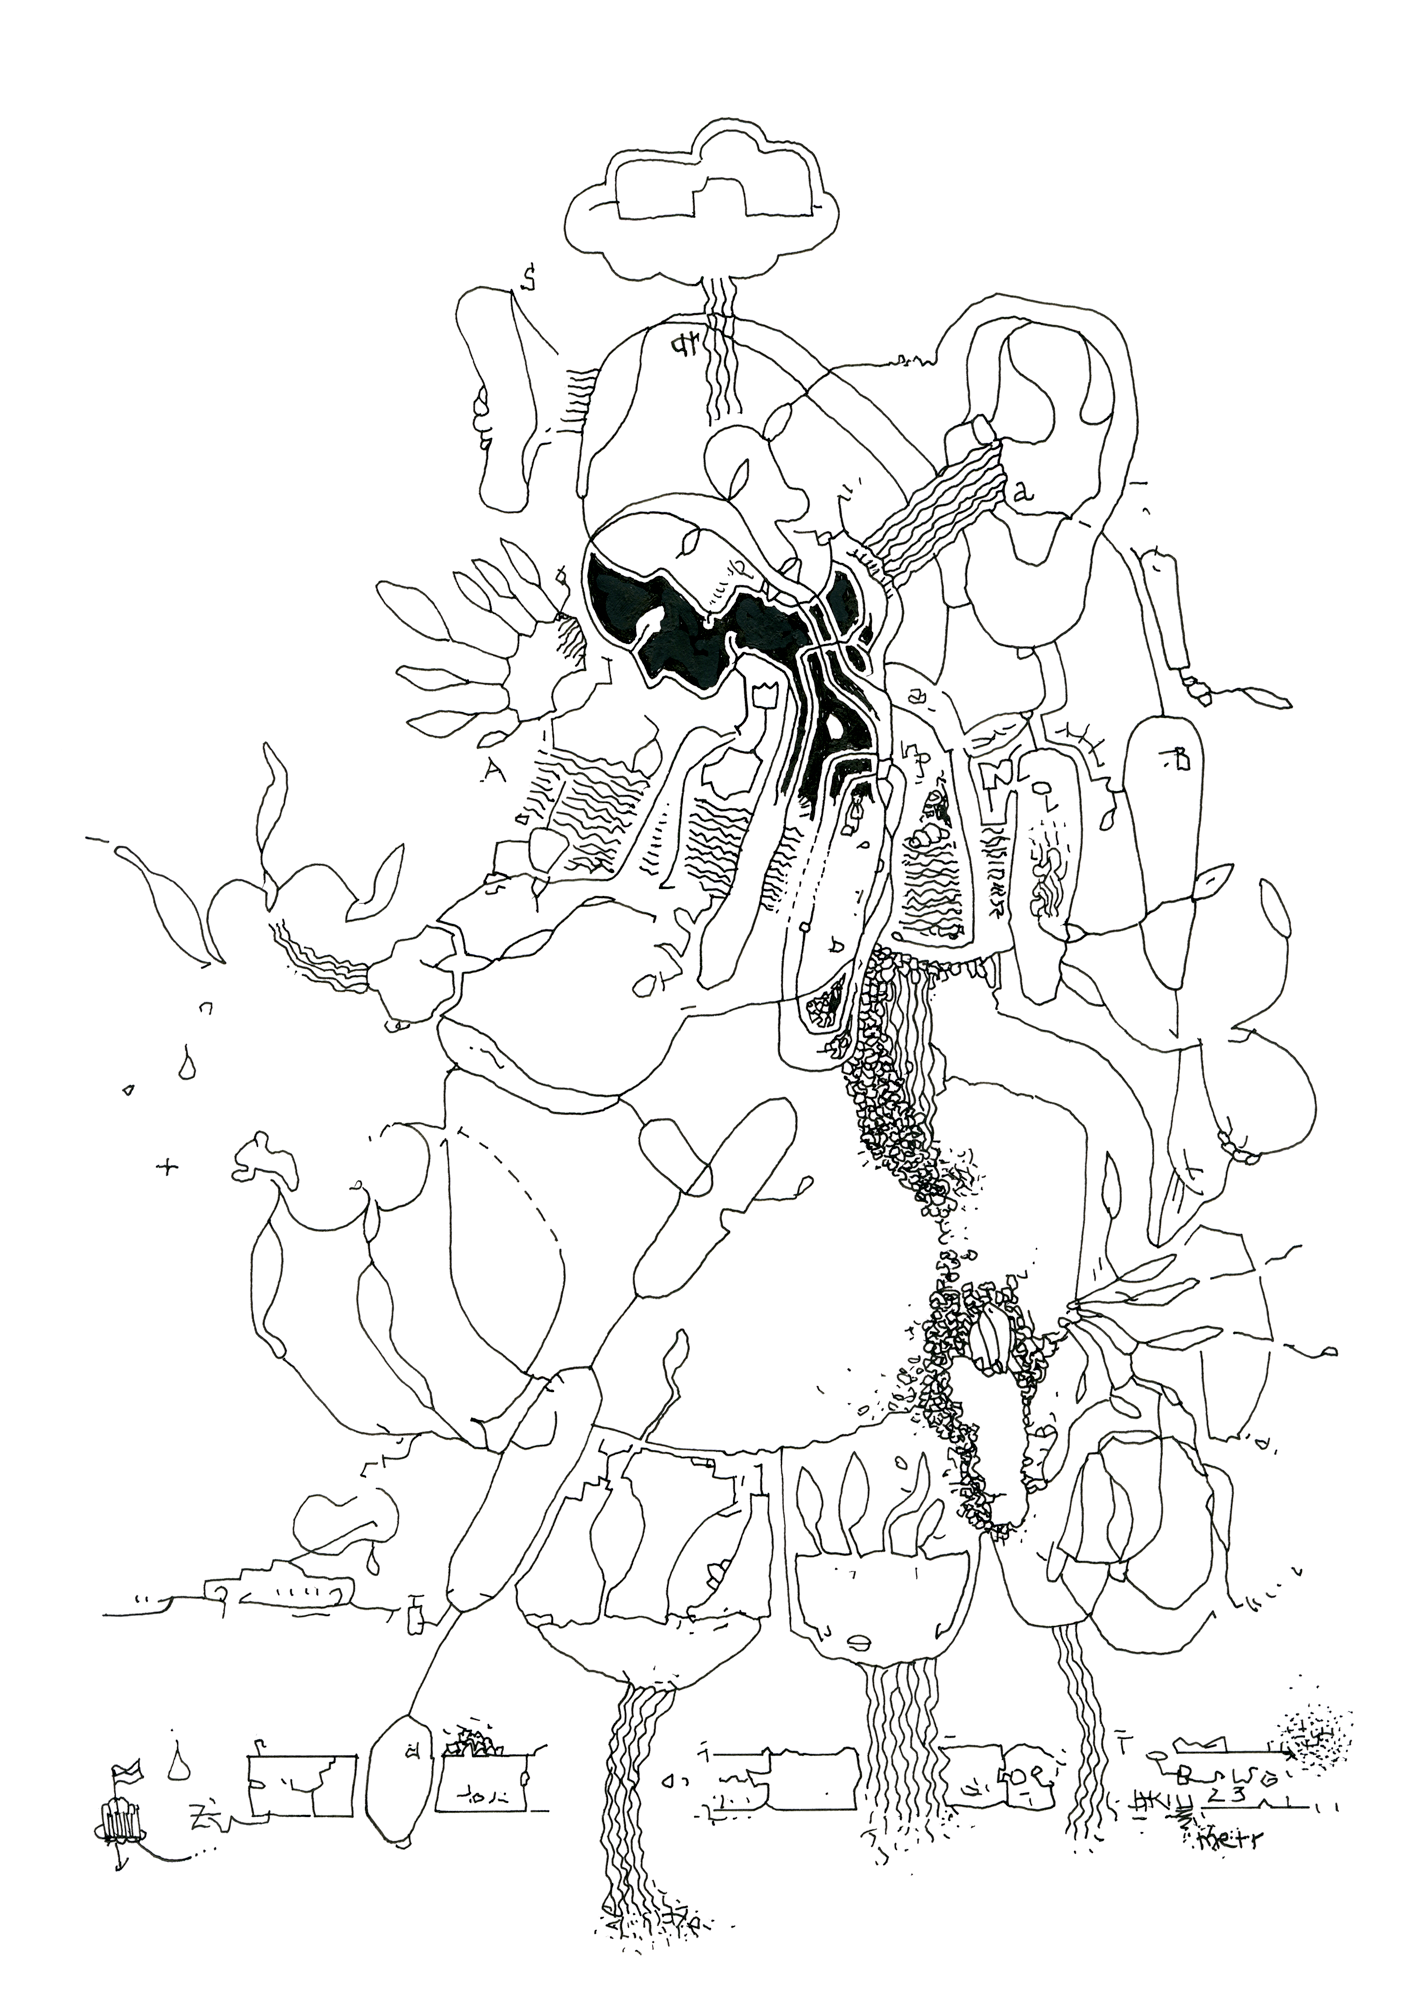 Hannes Kater: Tageszeichnung (Zeichnung/drawing) vom 20.03.2023 (1414 x 2000 Pixel)